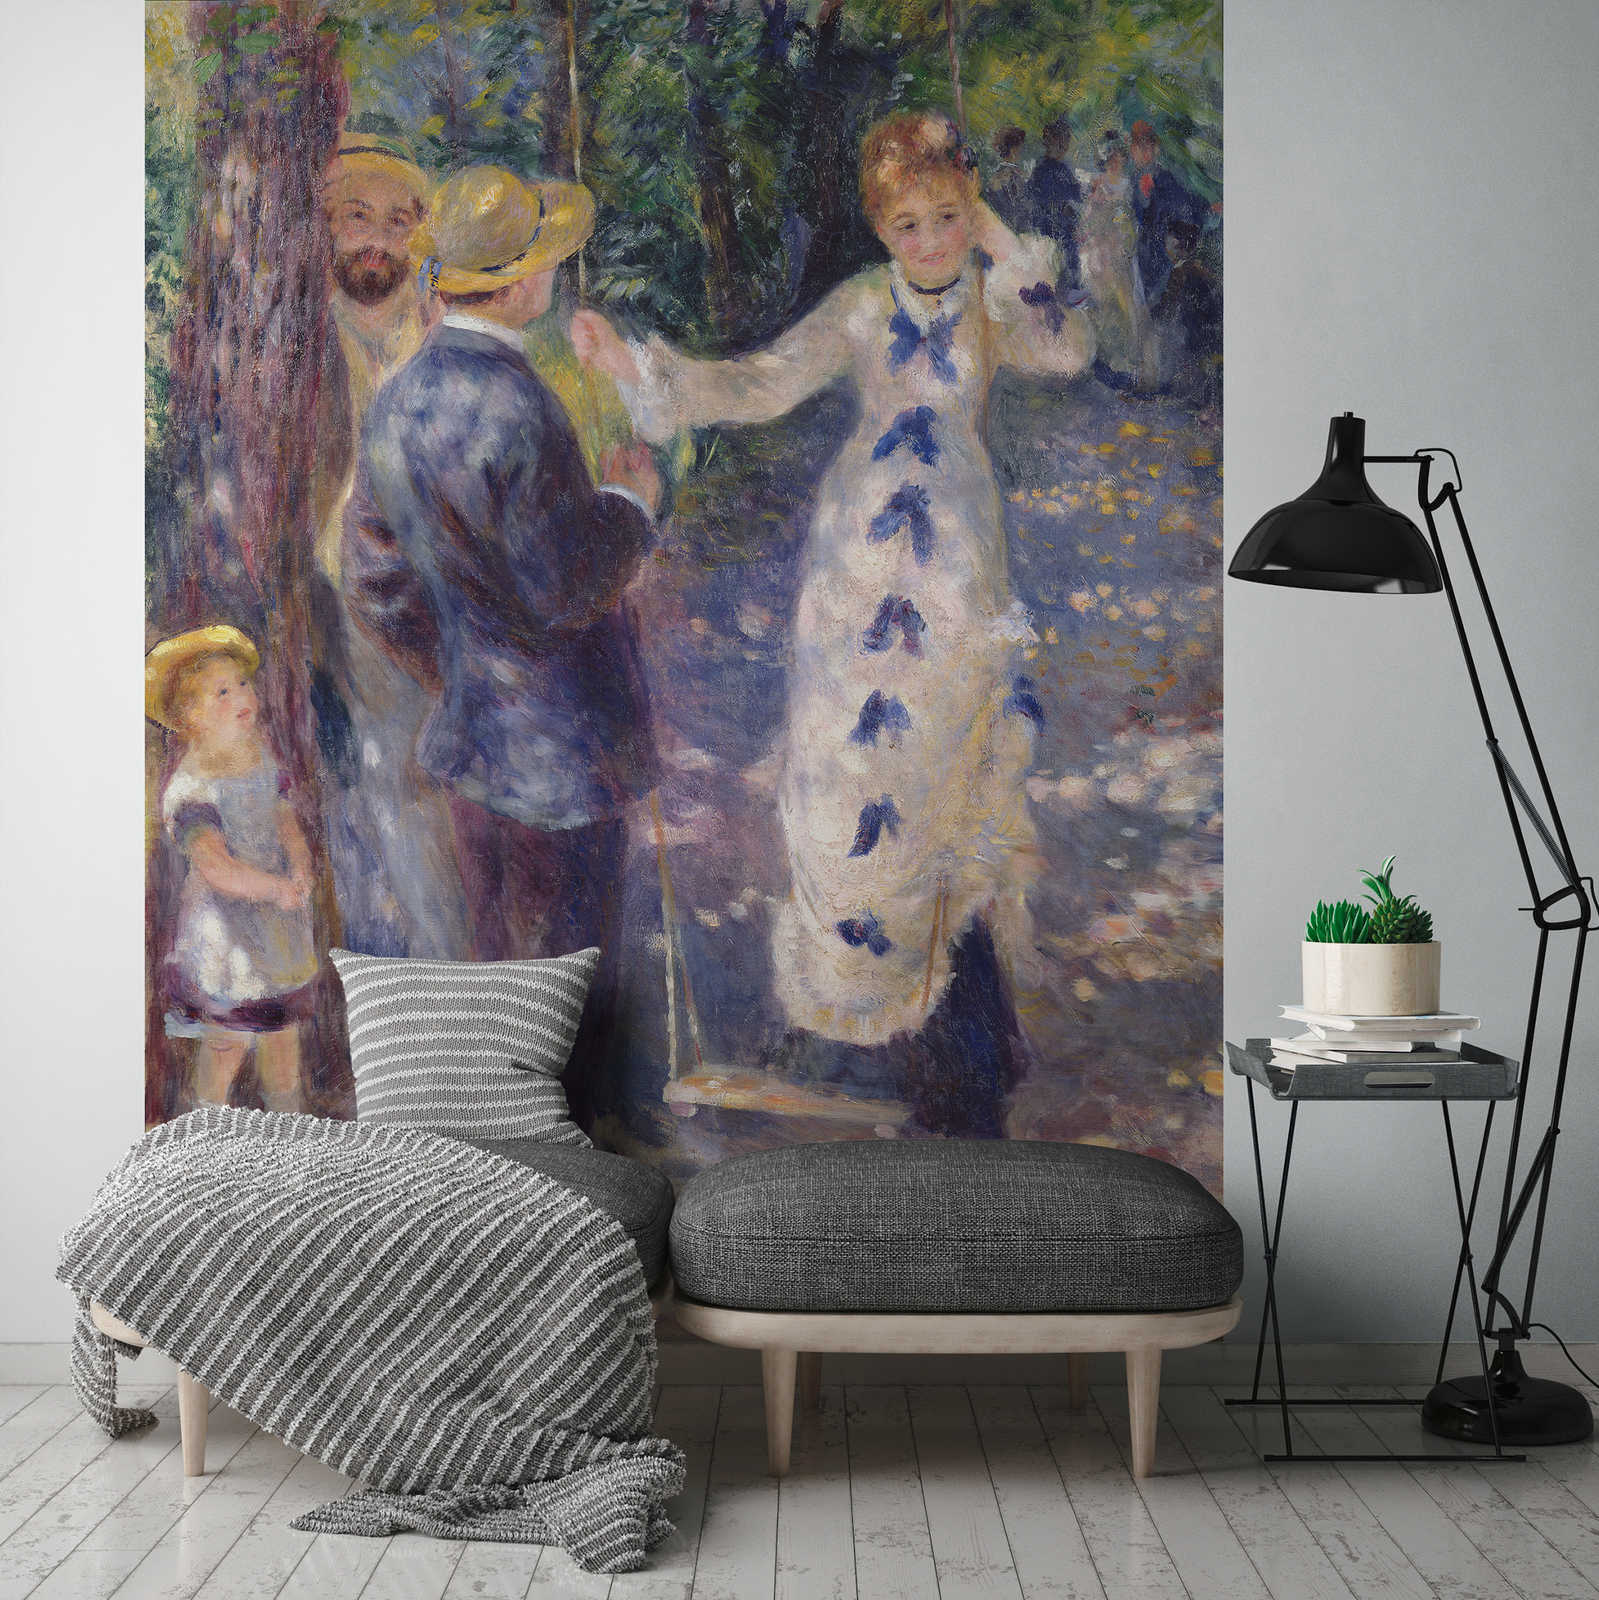             Fotomurali "Sull'altalena" di Pierre Auguste Renoir
        